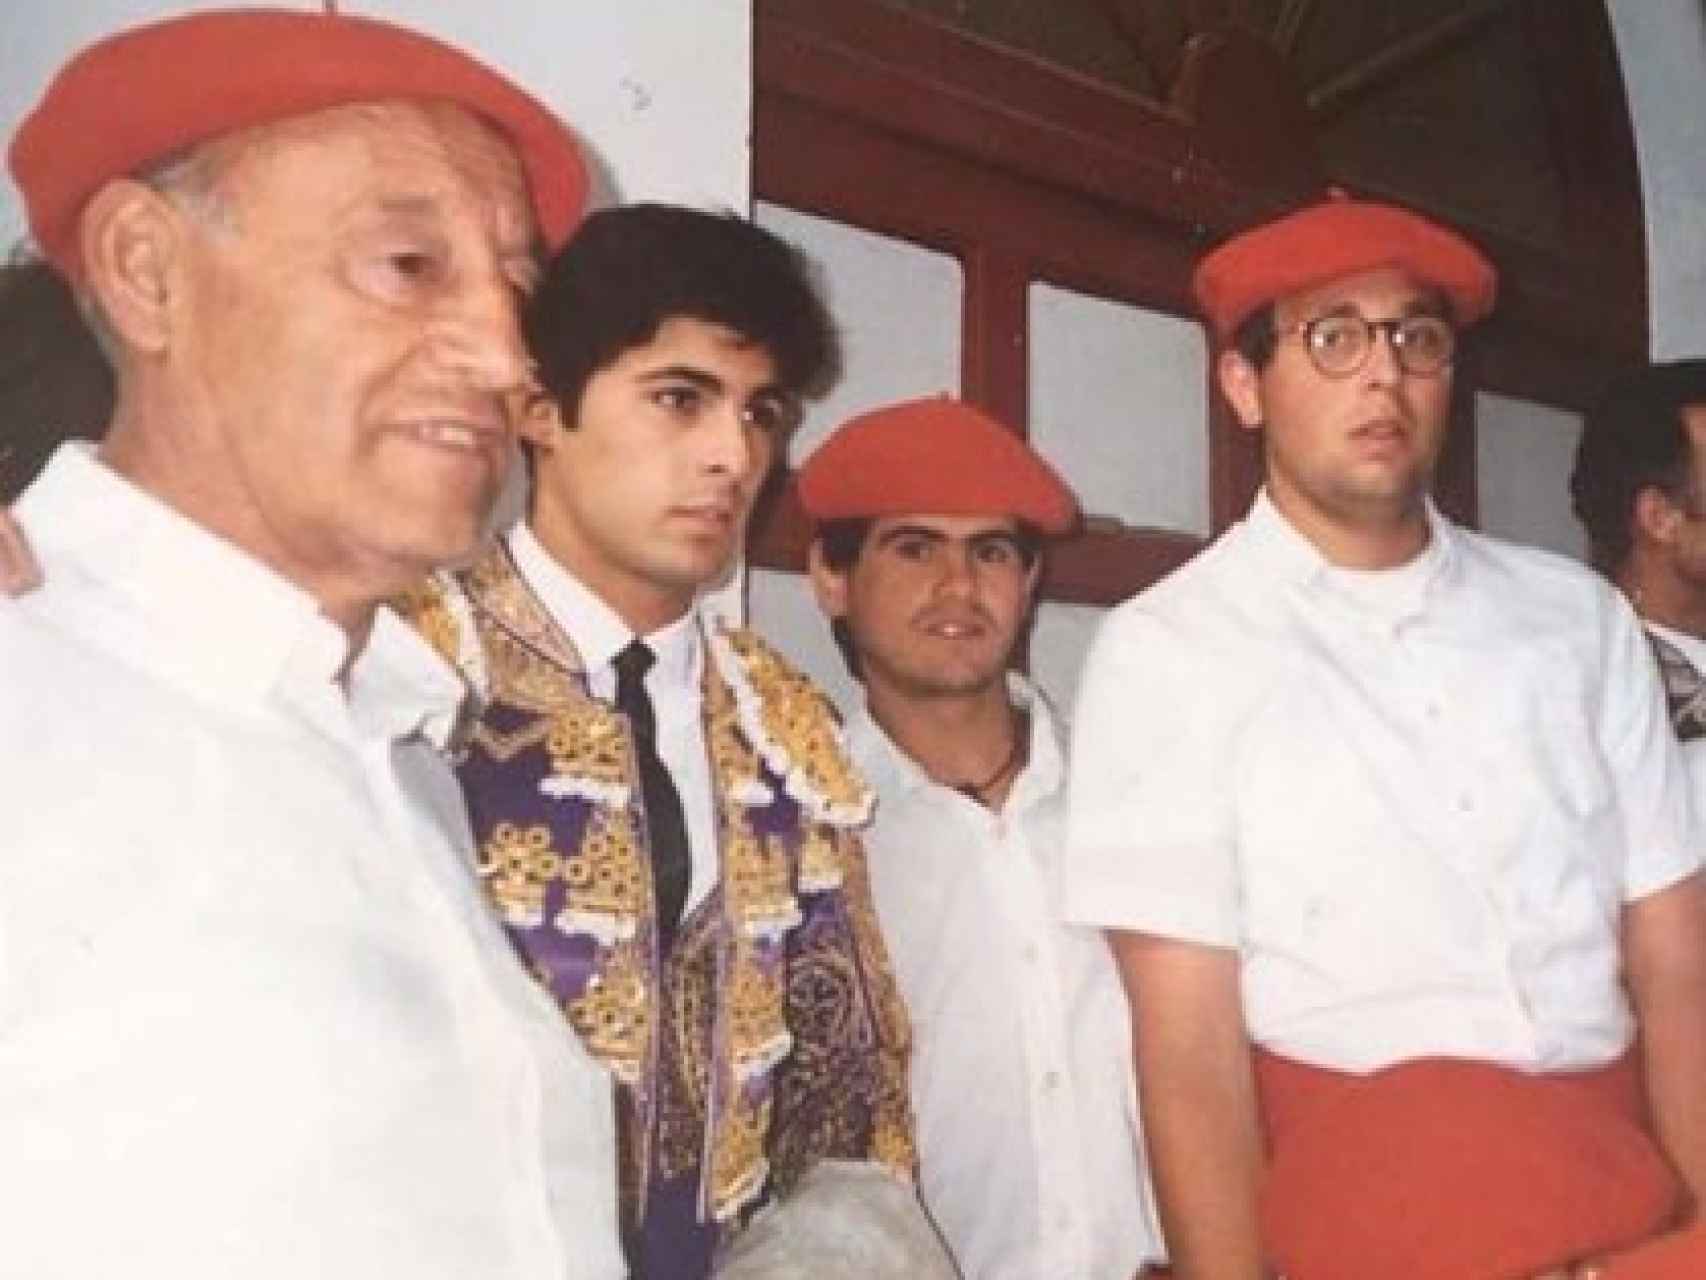 Esteban Geijo junto al torero Rivera Ordóñez y miembros de la cuadrilla de mulilleros (foto cedida)